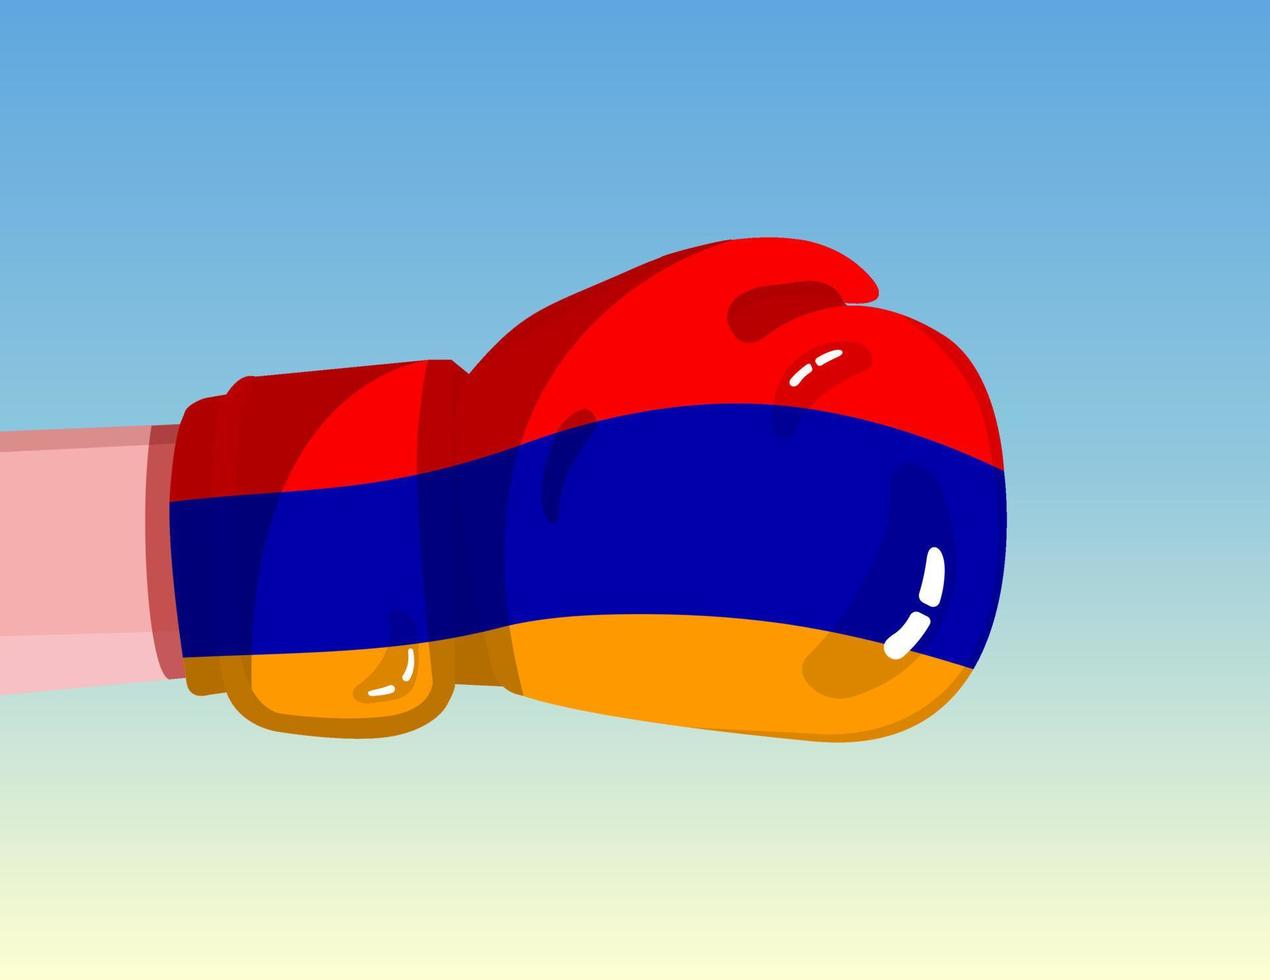 Armeniens flagga på boxningshandske. konfrontation mellan länder med konkurrenskraft. kränkande attityd. maktdelning. mall redo design. vektor